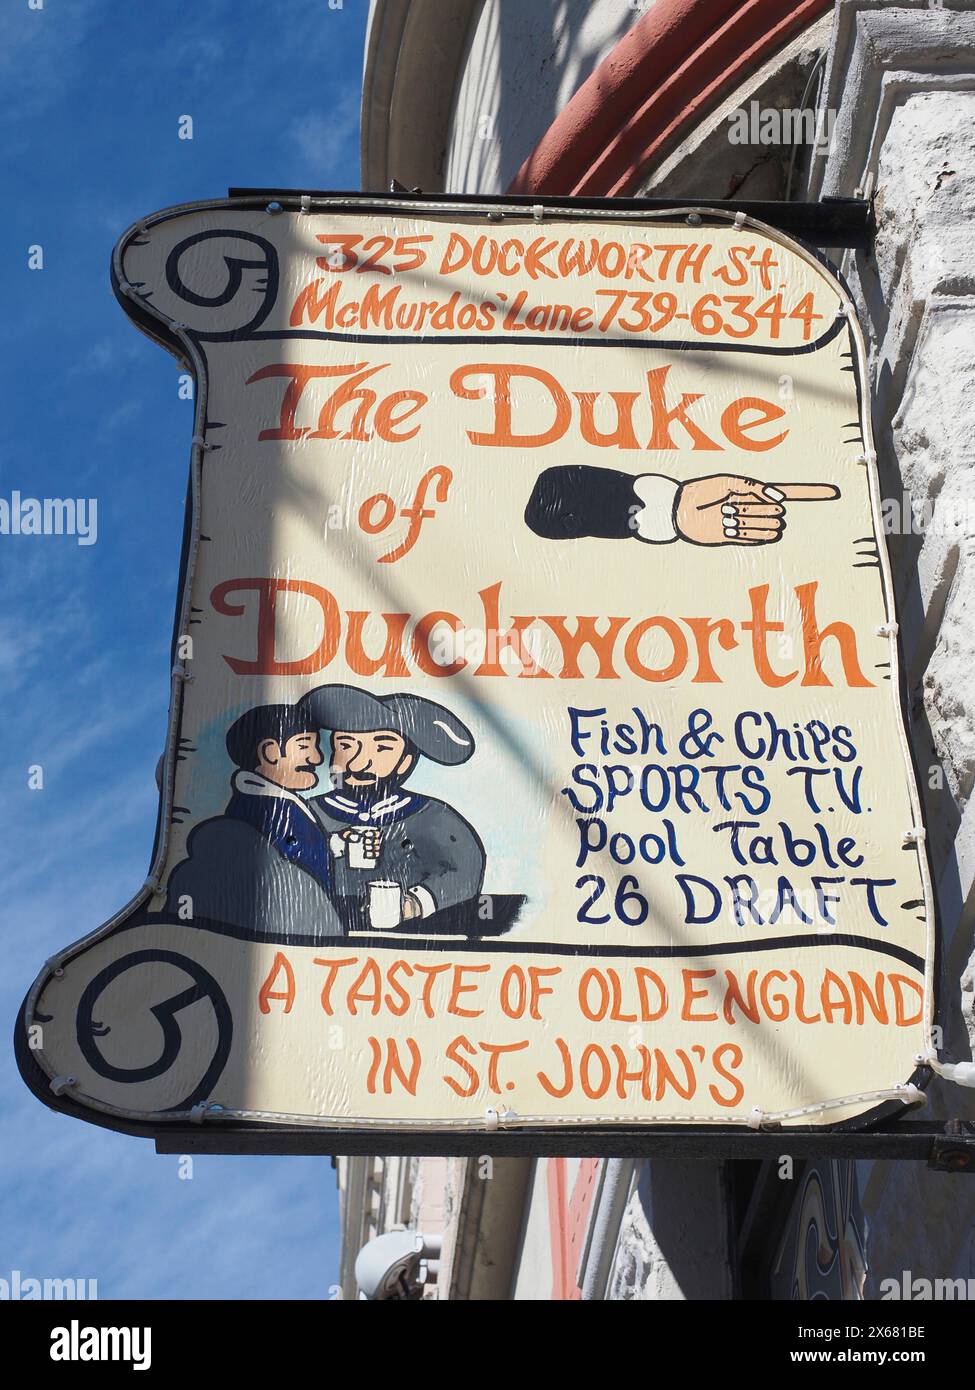 Ethe Duke of Duckworth' Pub-Schild, Alkohol, Bier, britisches Erbe, Kanada, City of St John's, Bier vom Fass, Trinken, Duckworth Street, Unterhaltung, Fish and Chips, Neufundland, Nordamerika, Pub-Kultur, Schilder, Straßenschild, traditionell Stockfoto